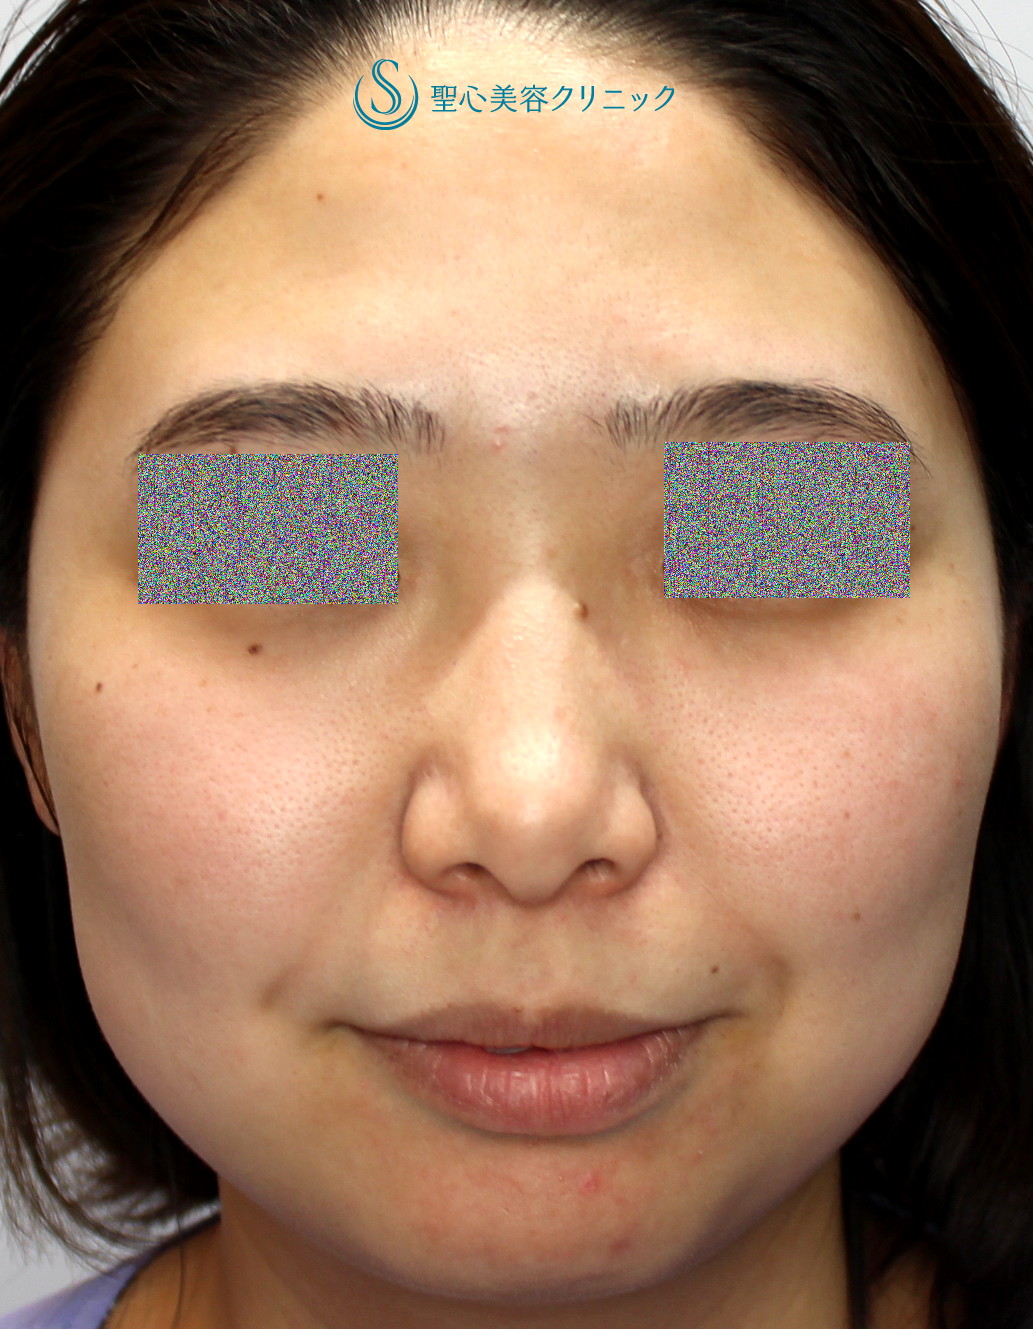 症例写真 術前 プロテーゼによる隆鼻術